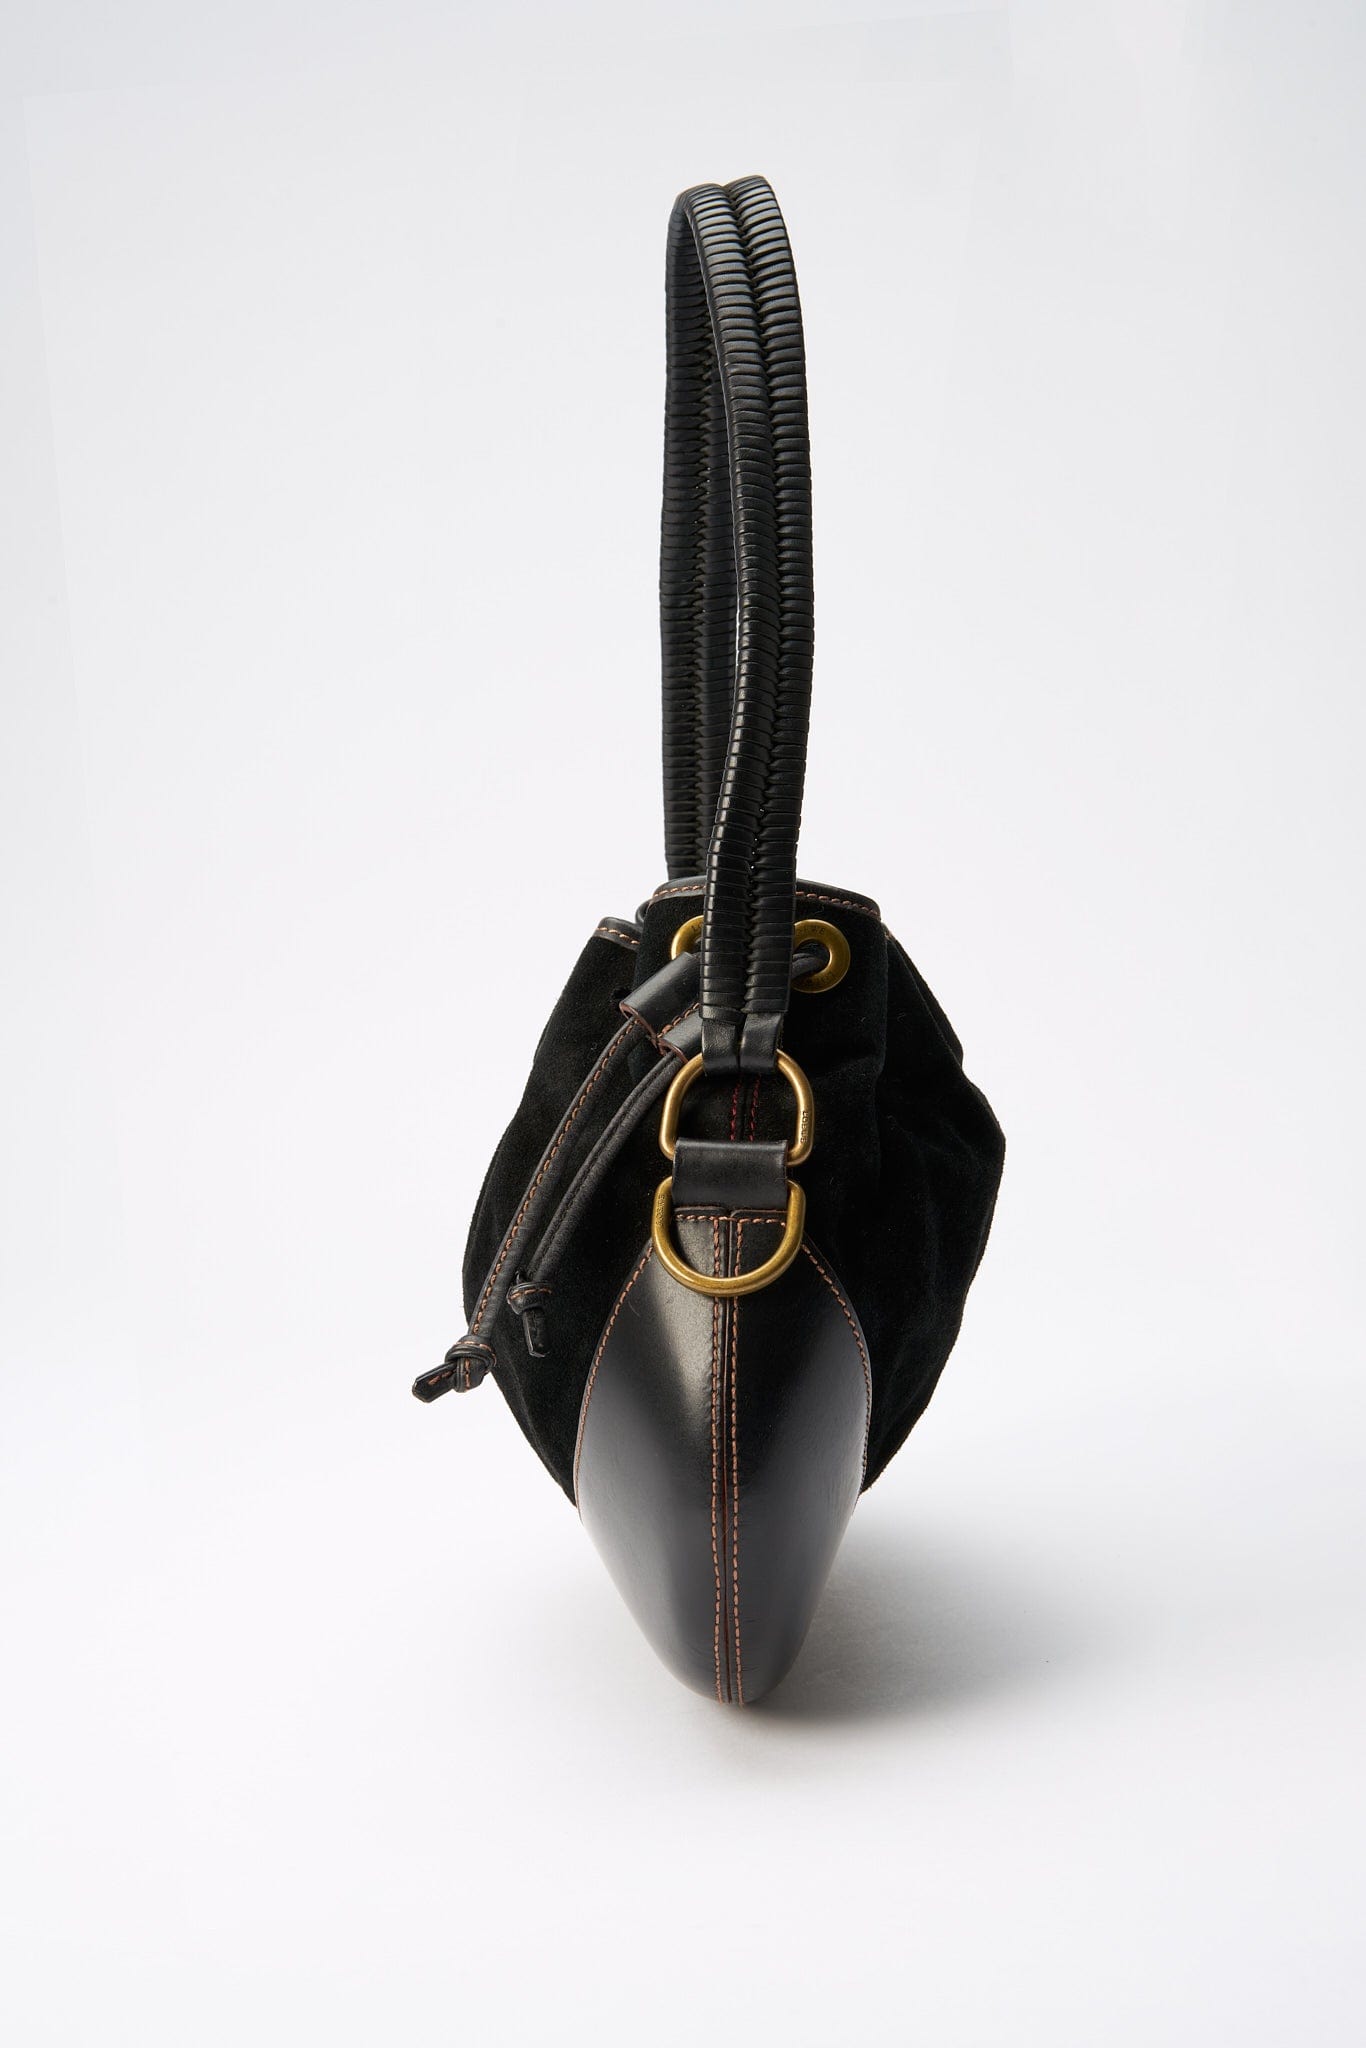 Vintage Loewe Black Leather and Suede Drawstring Bag